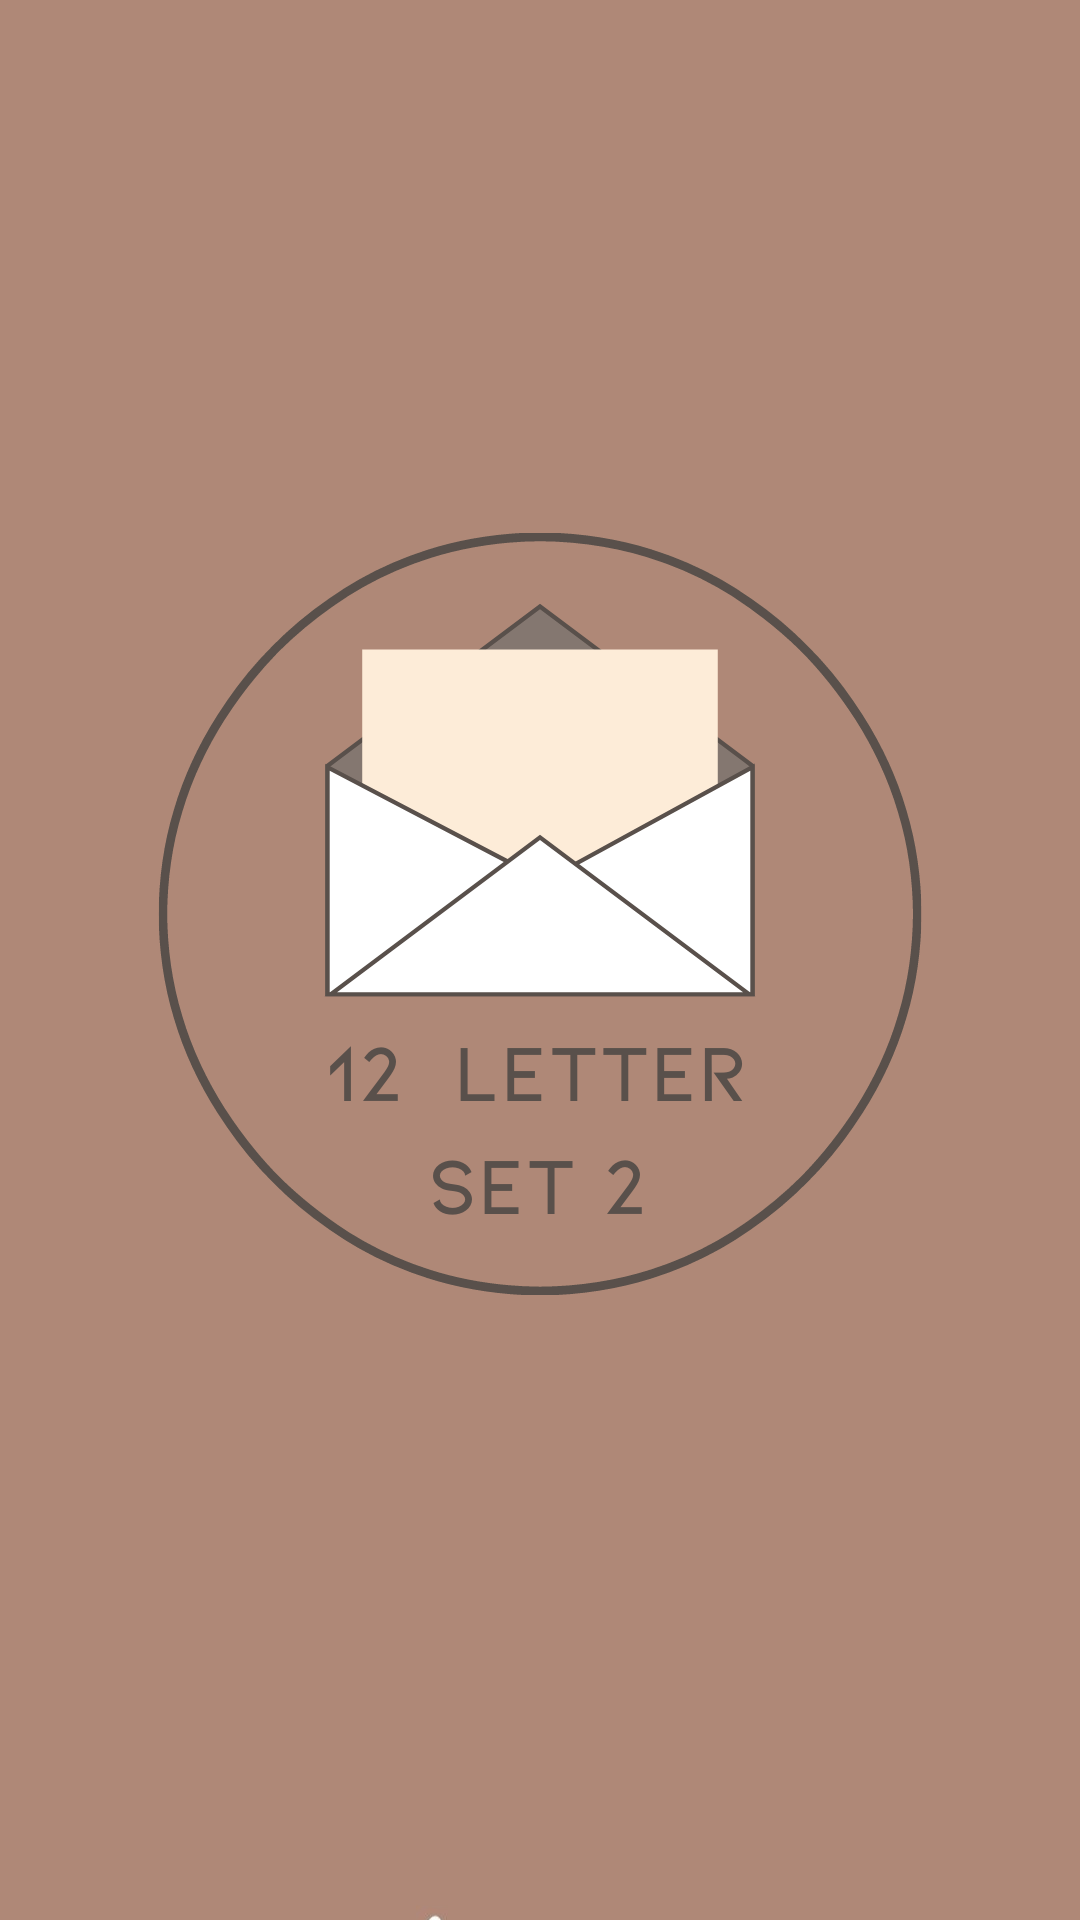 12 Letter Set 2